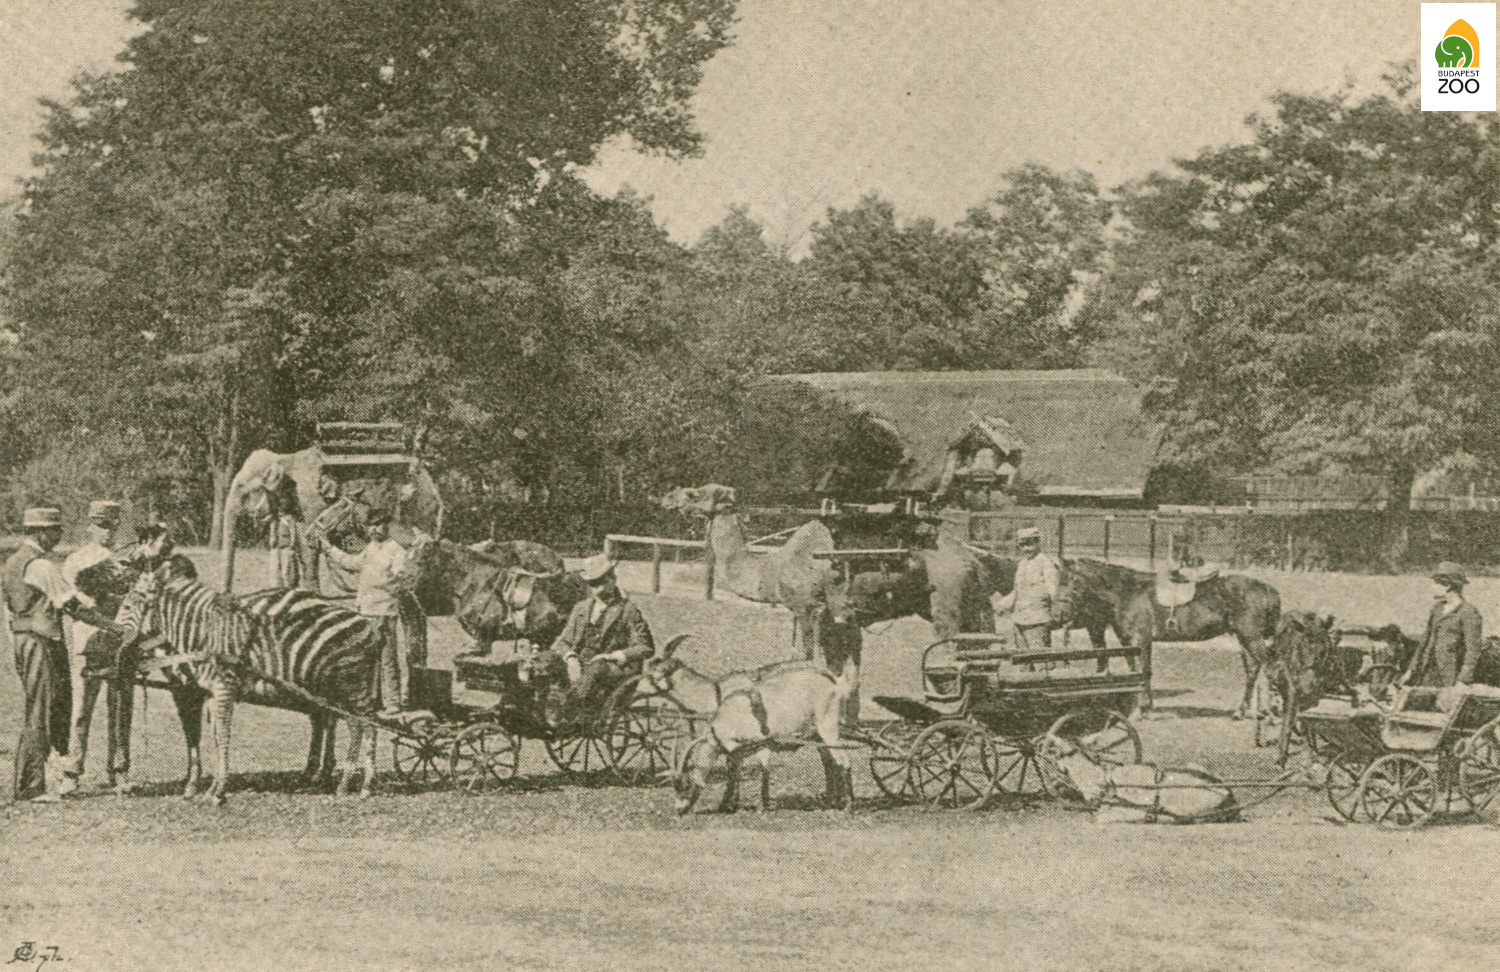 01 – Lovagló tér az Állatkertben 1893-ban. A kép bal szélén láthatók a kocsiba fogott fiatal alföldi zebrák, de volt póni- és kecskefogat, hátasló, elefánt és teve is 